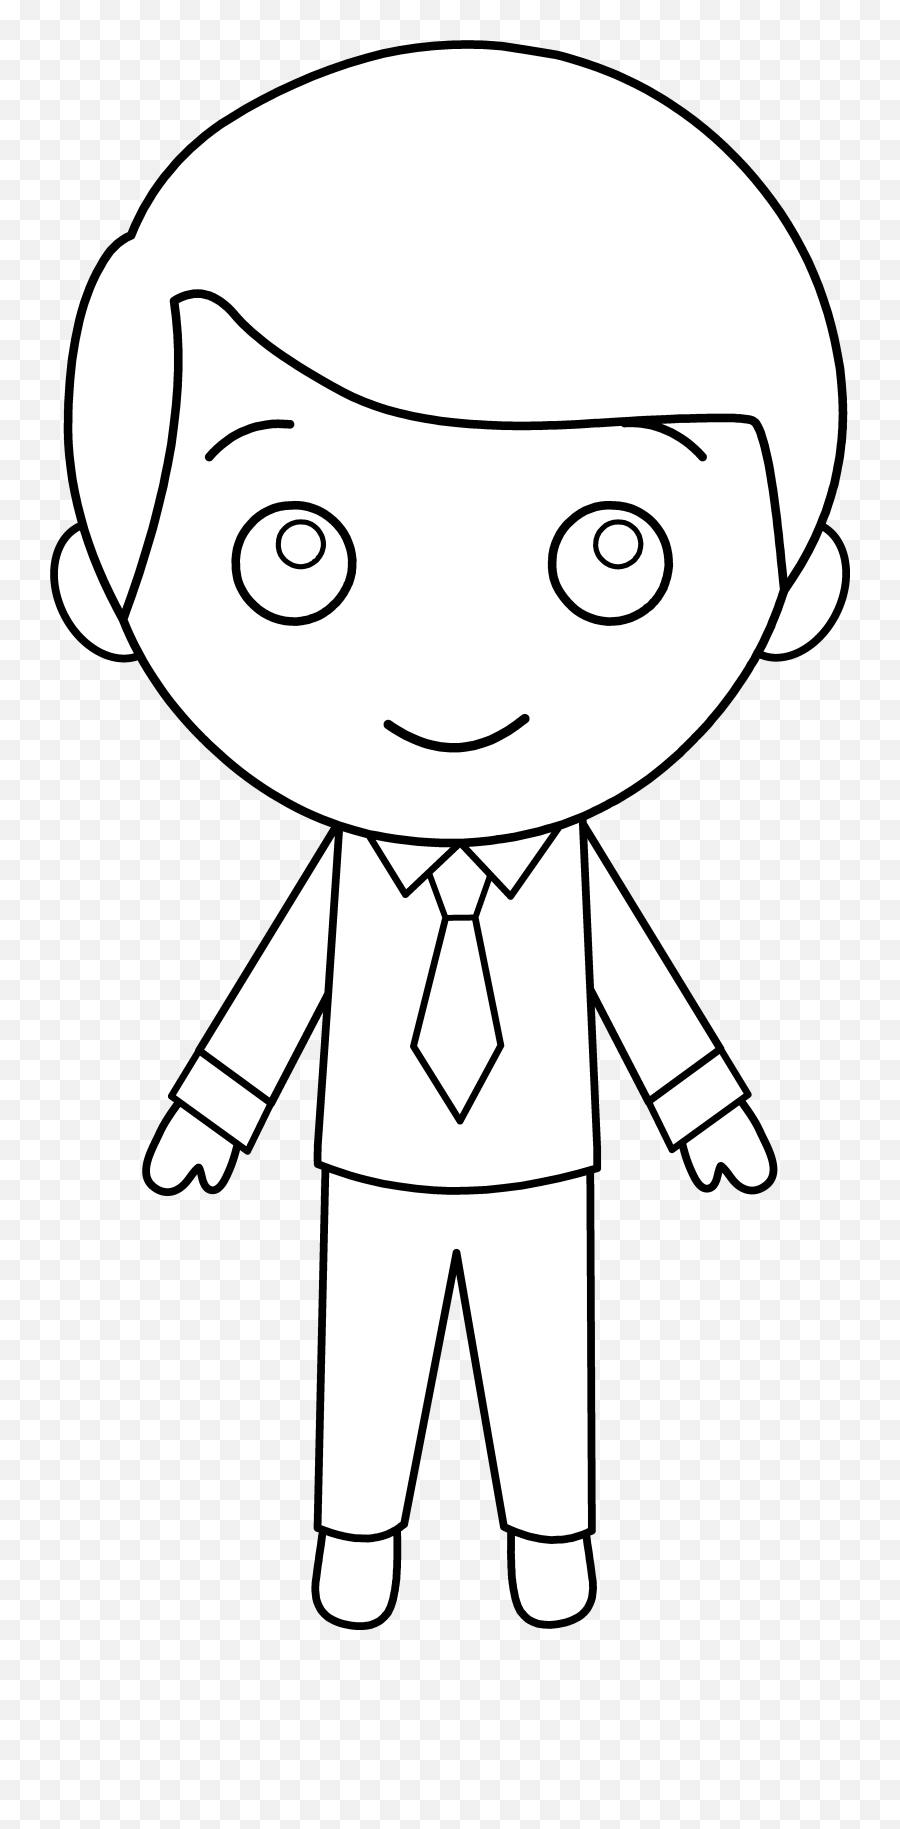 Pictures Of Little Boy - Clipartsco Boy Cartoon Black Background Emoji,Little Boy Clipart